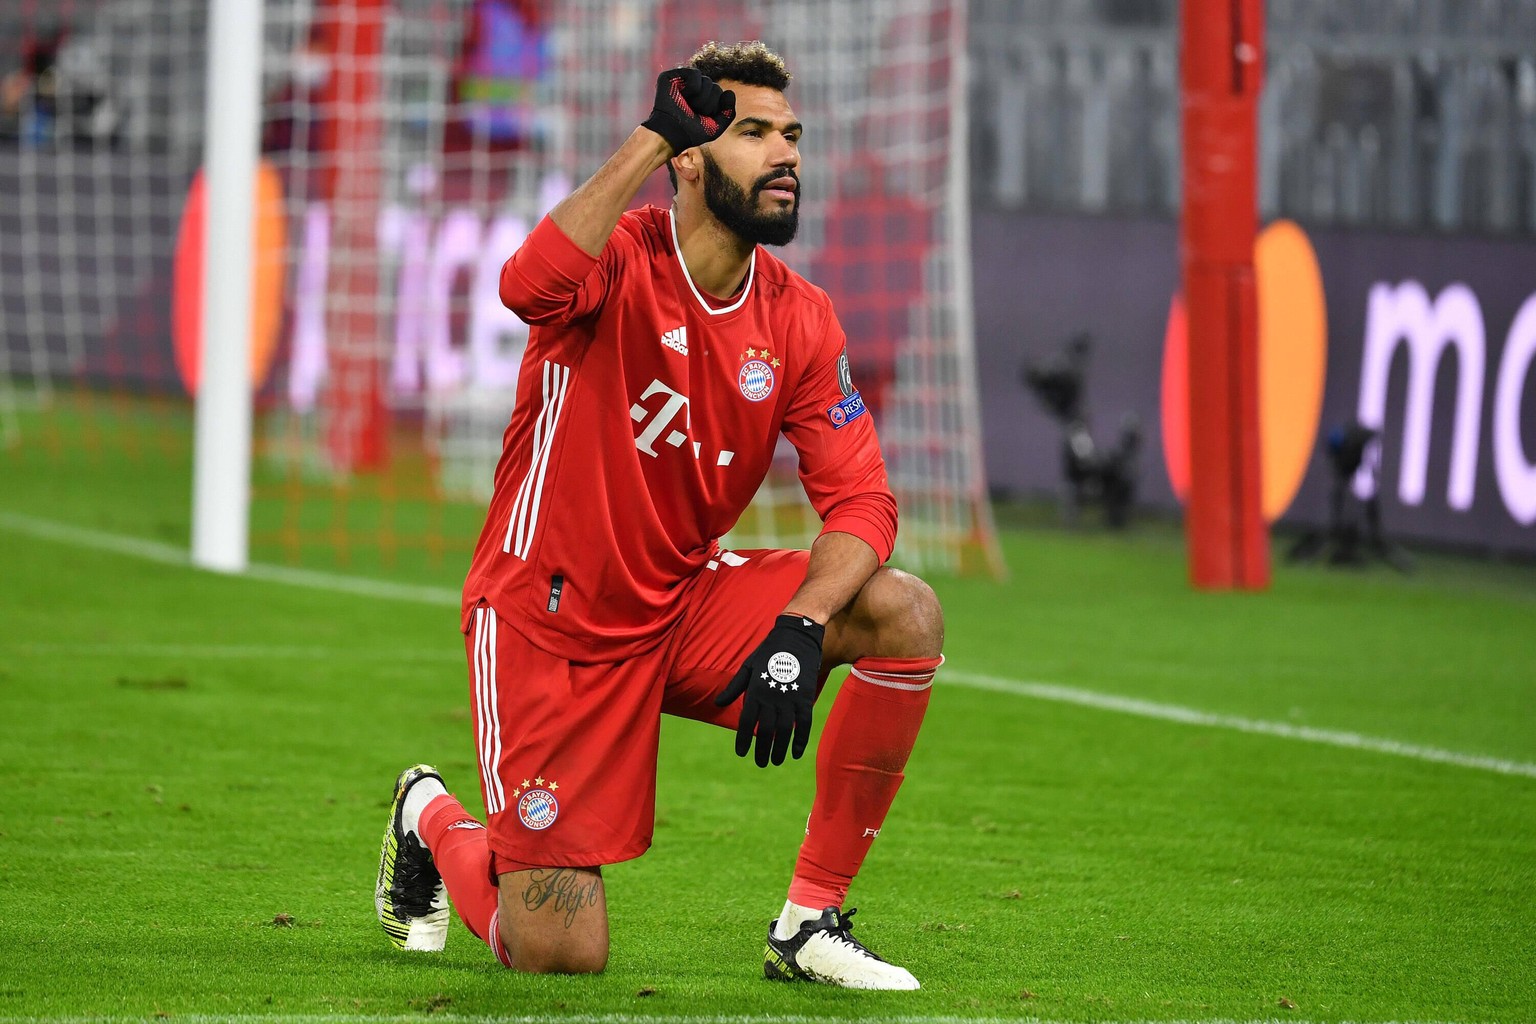 "Man darf nicht wegsehen, man muss auch aktiv sein und Stellung beziehen", sagte Bayern-Star Eric Maxim Choupo-Moting nach dem Spiel. Der Stürmer traf zum 2:0 gegen Lok Moskau.